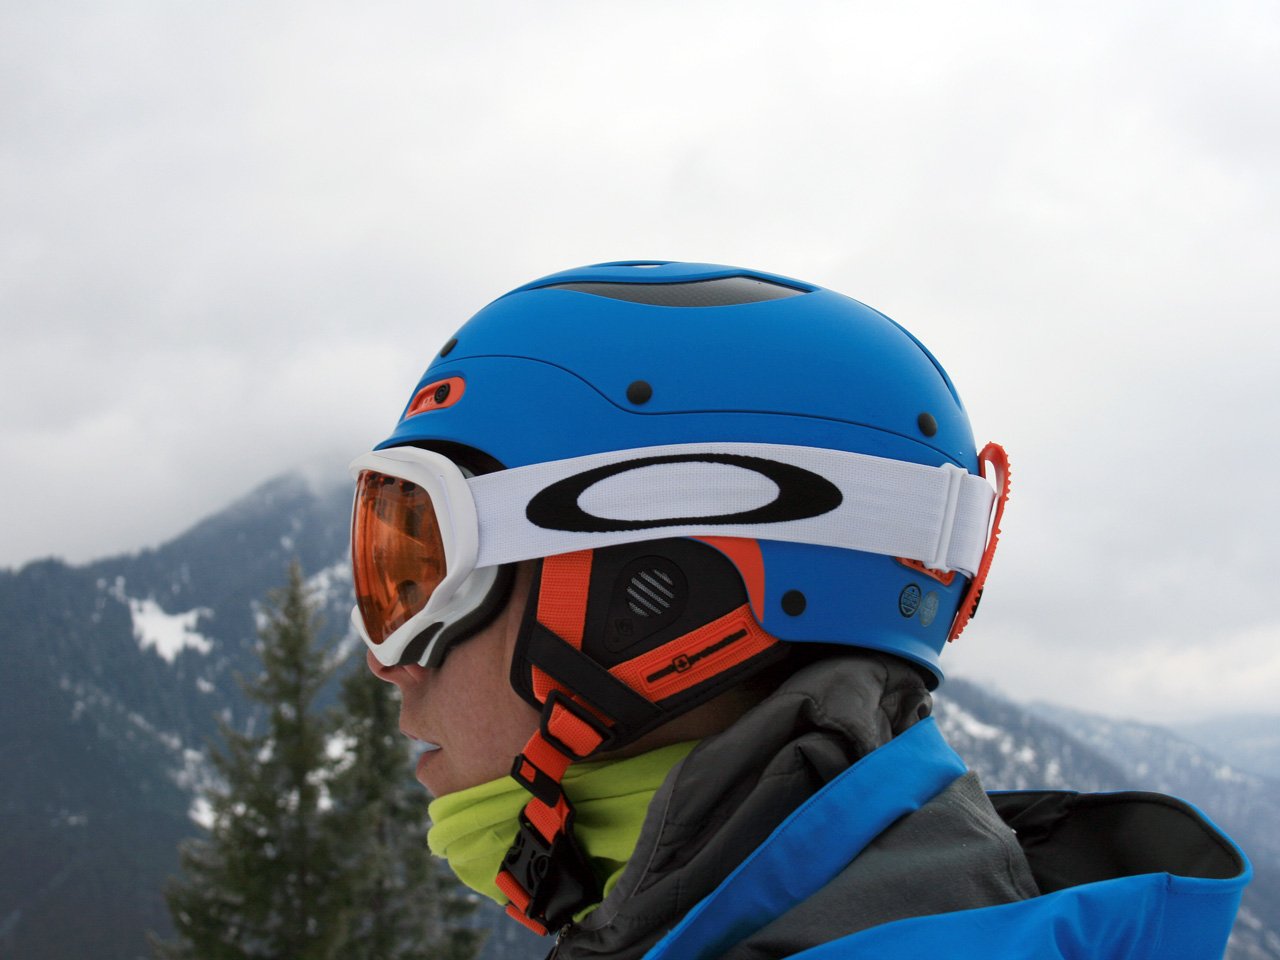 Testbericht – Sweet Protection Trooper Helmet: Sportliches Design, präzise Technik und Komfort – alles unter einer Haube